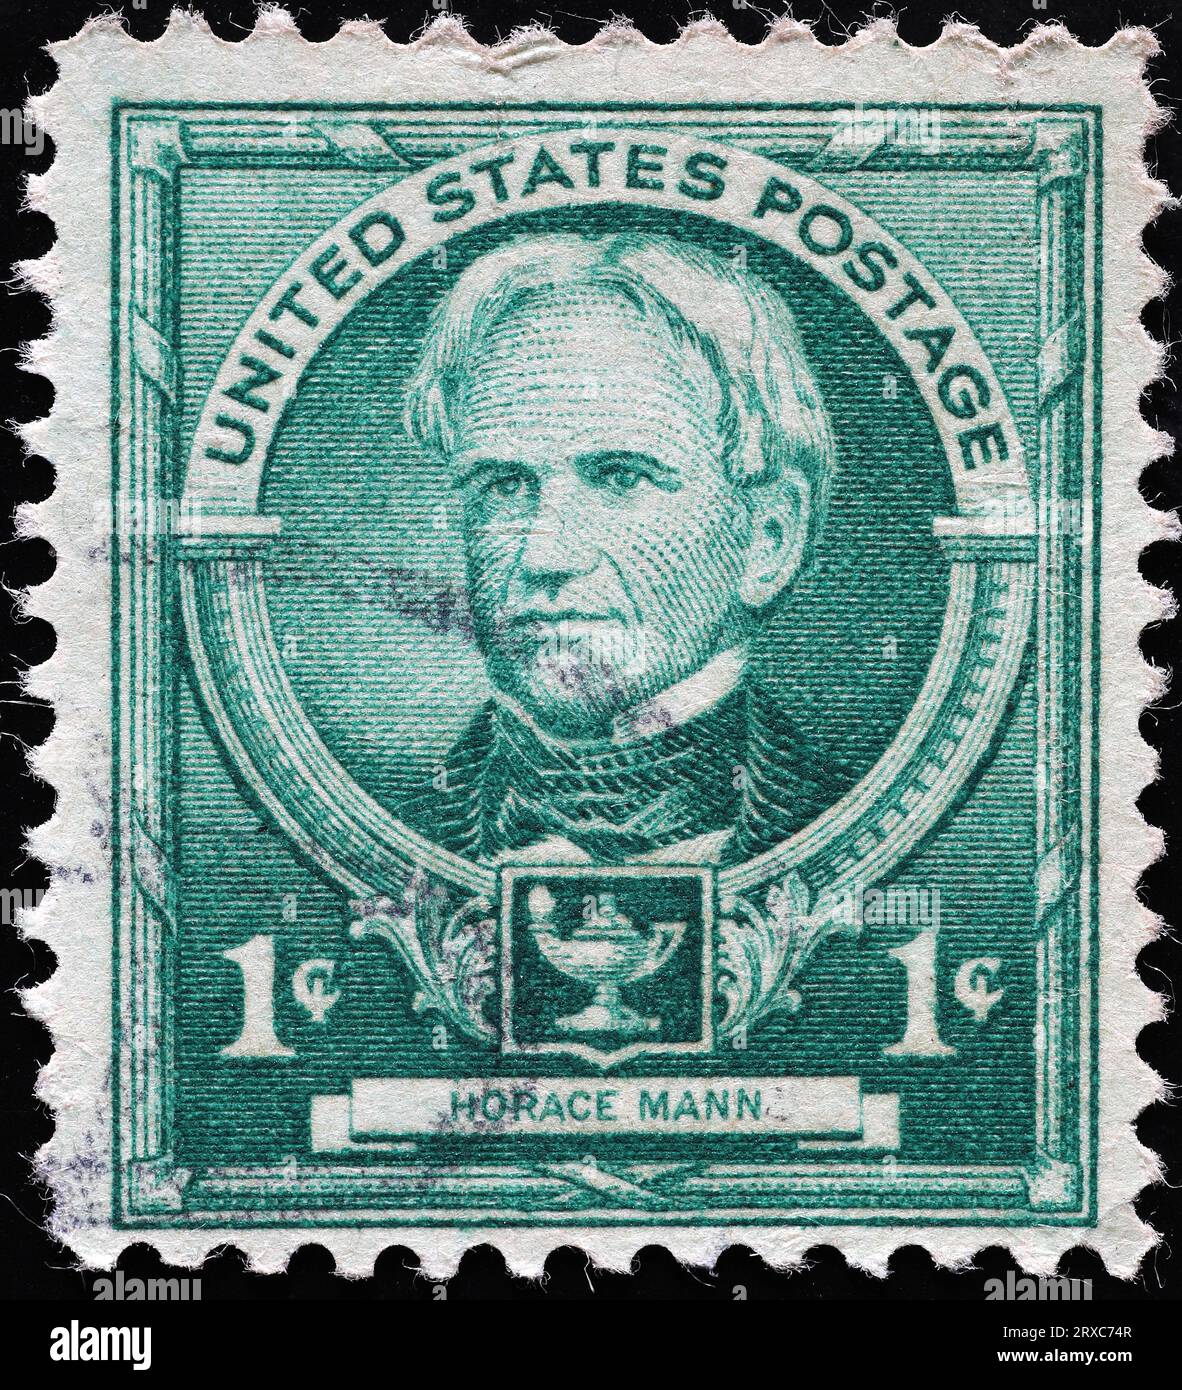 Politicien Horace Mann sur vieux timbre américain Banque D'Images